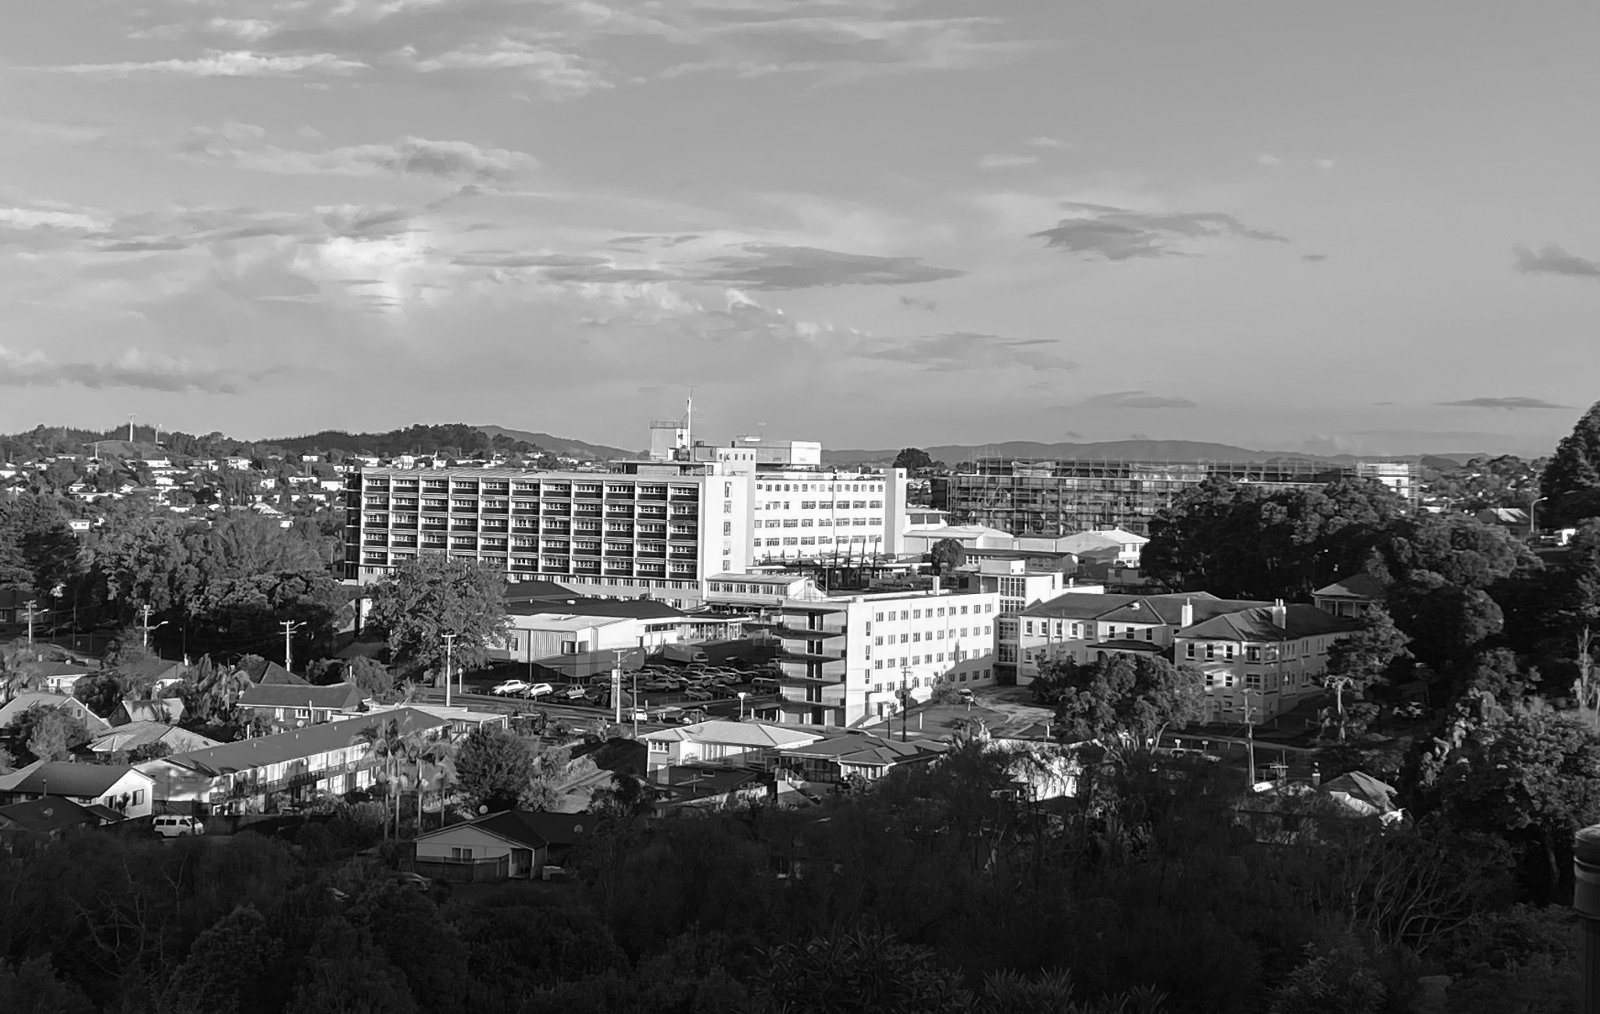 Whangarei Hospital Image